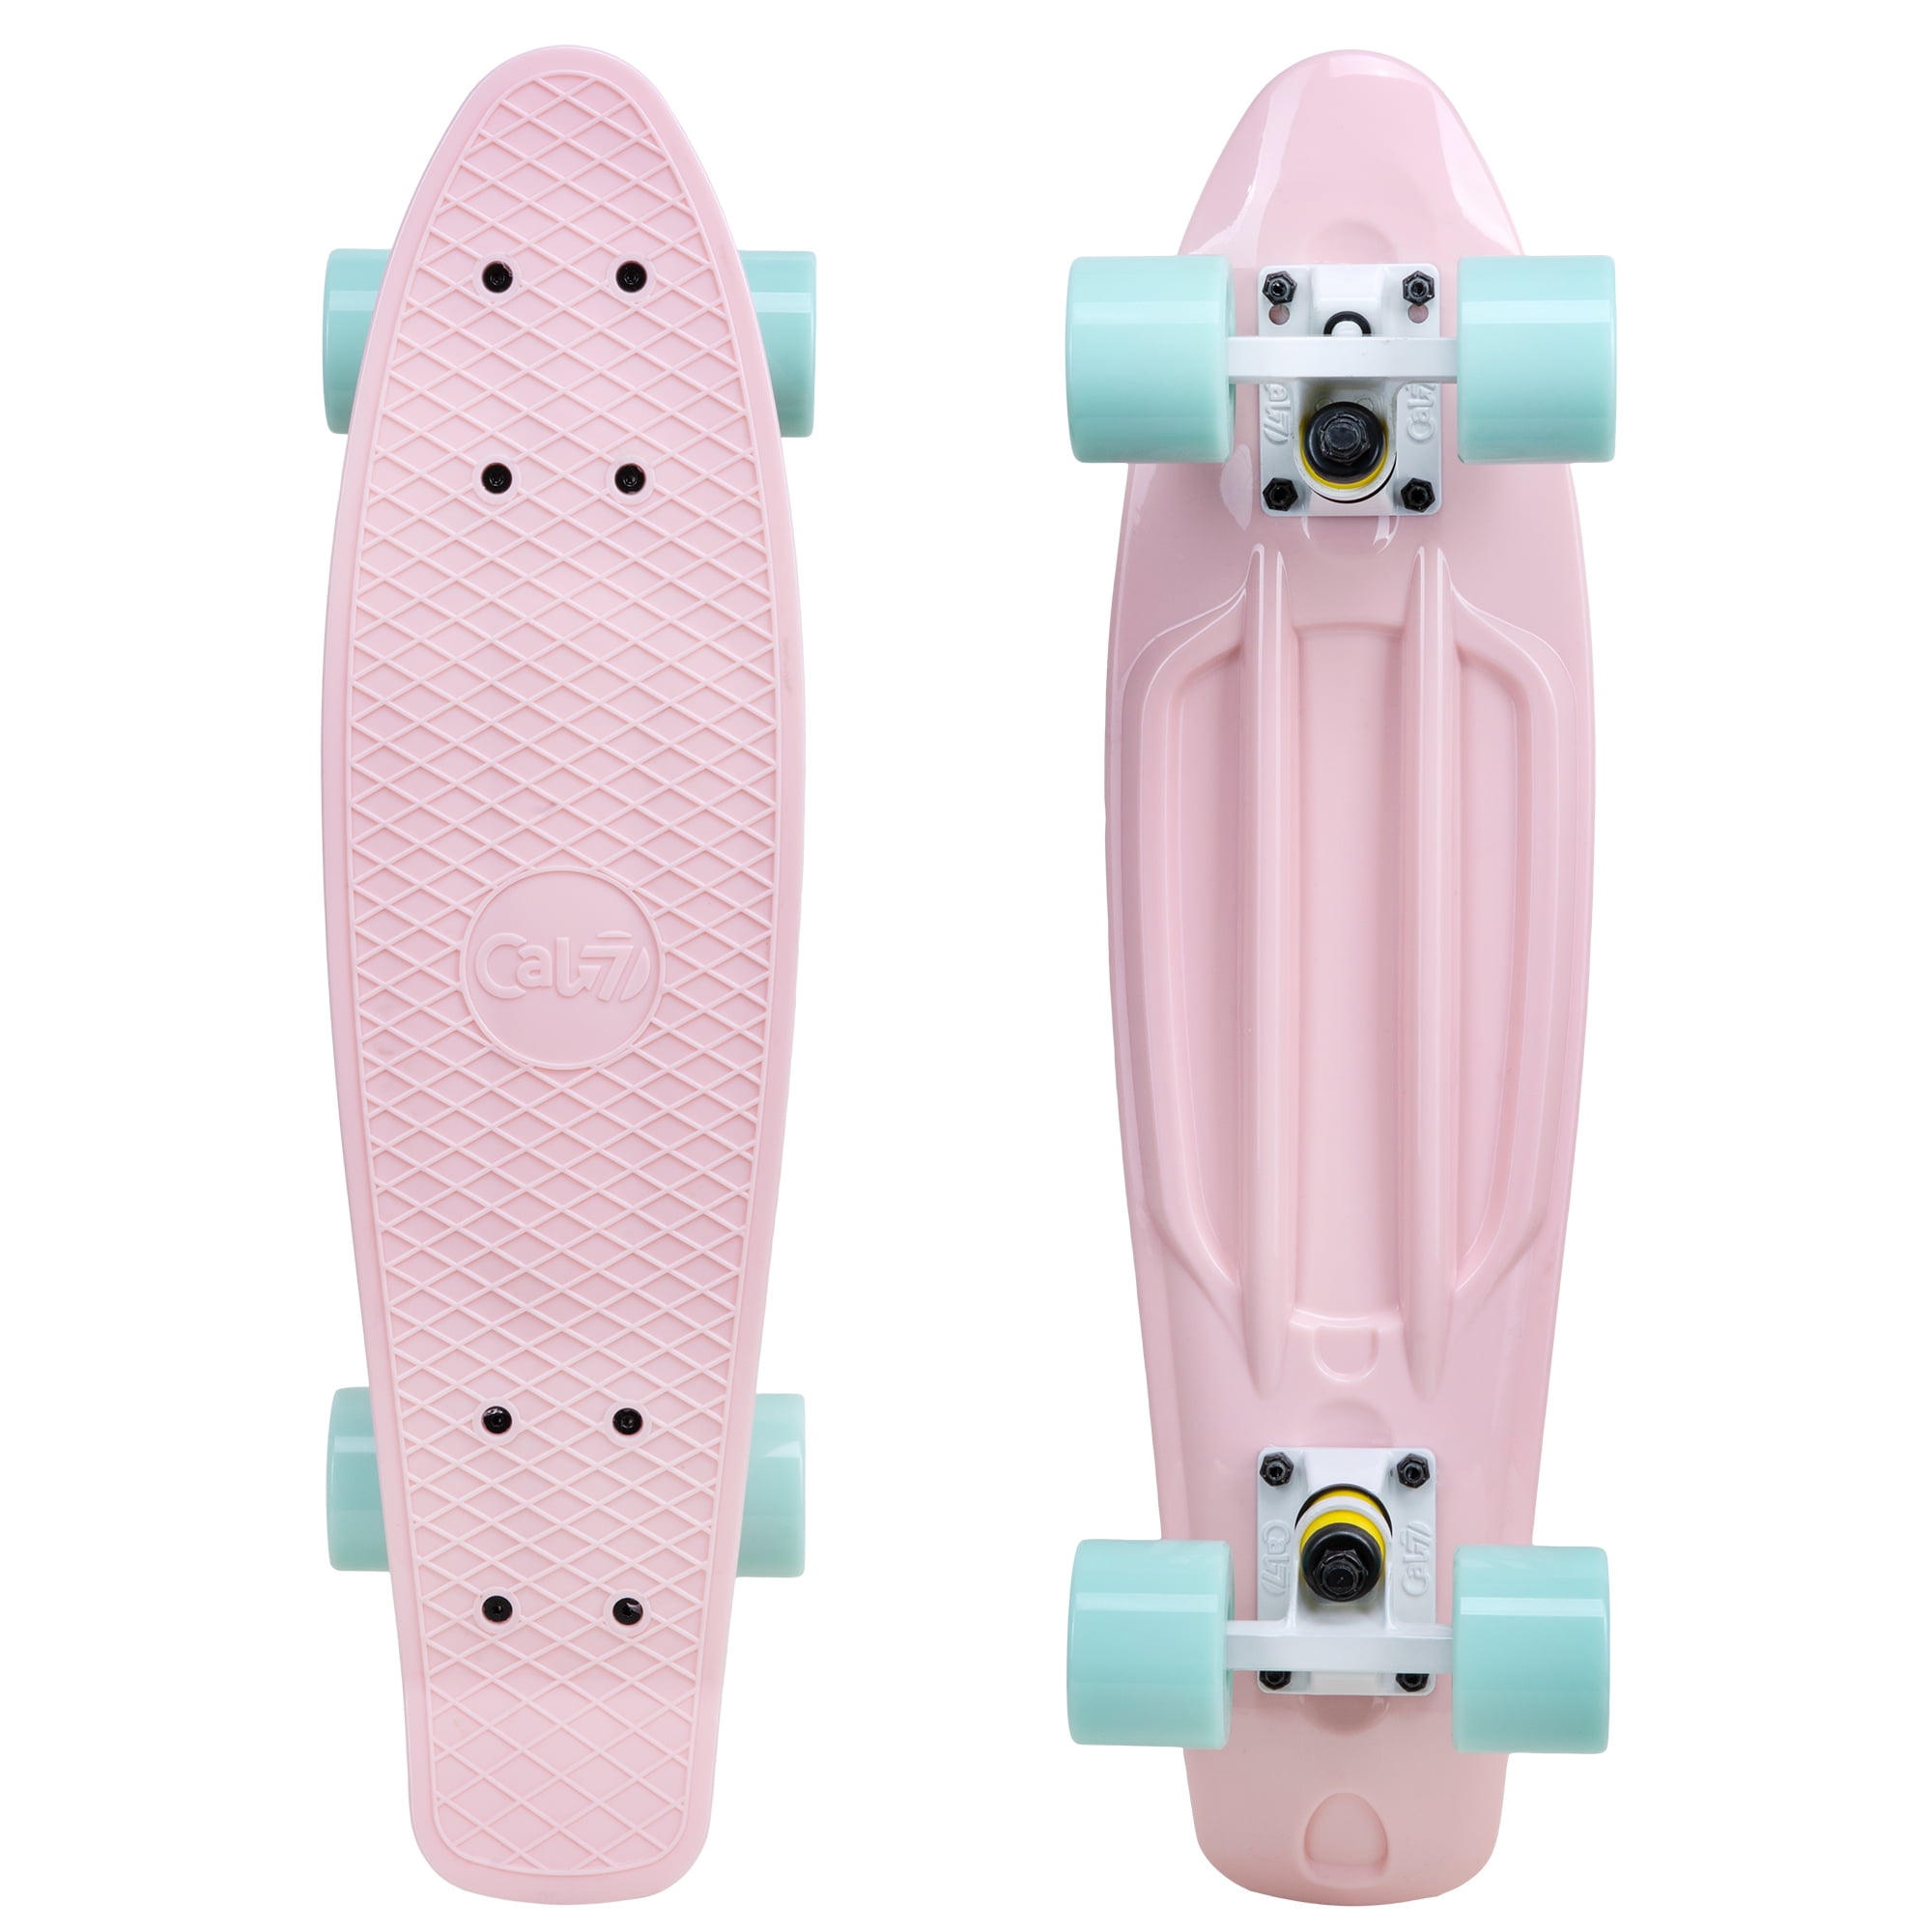 cal 7 complete mini cruiser skateboard, 22 inch plastic in retro design  (lotus)